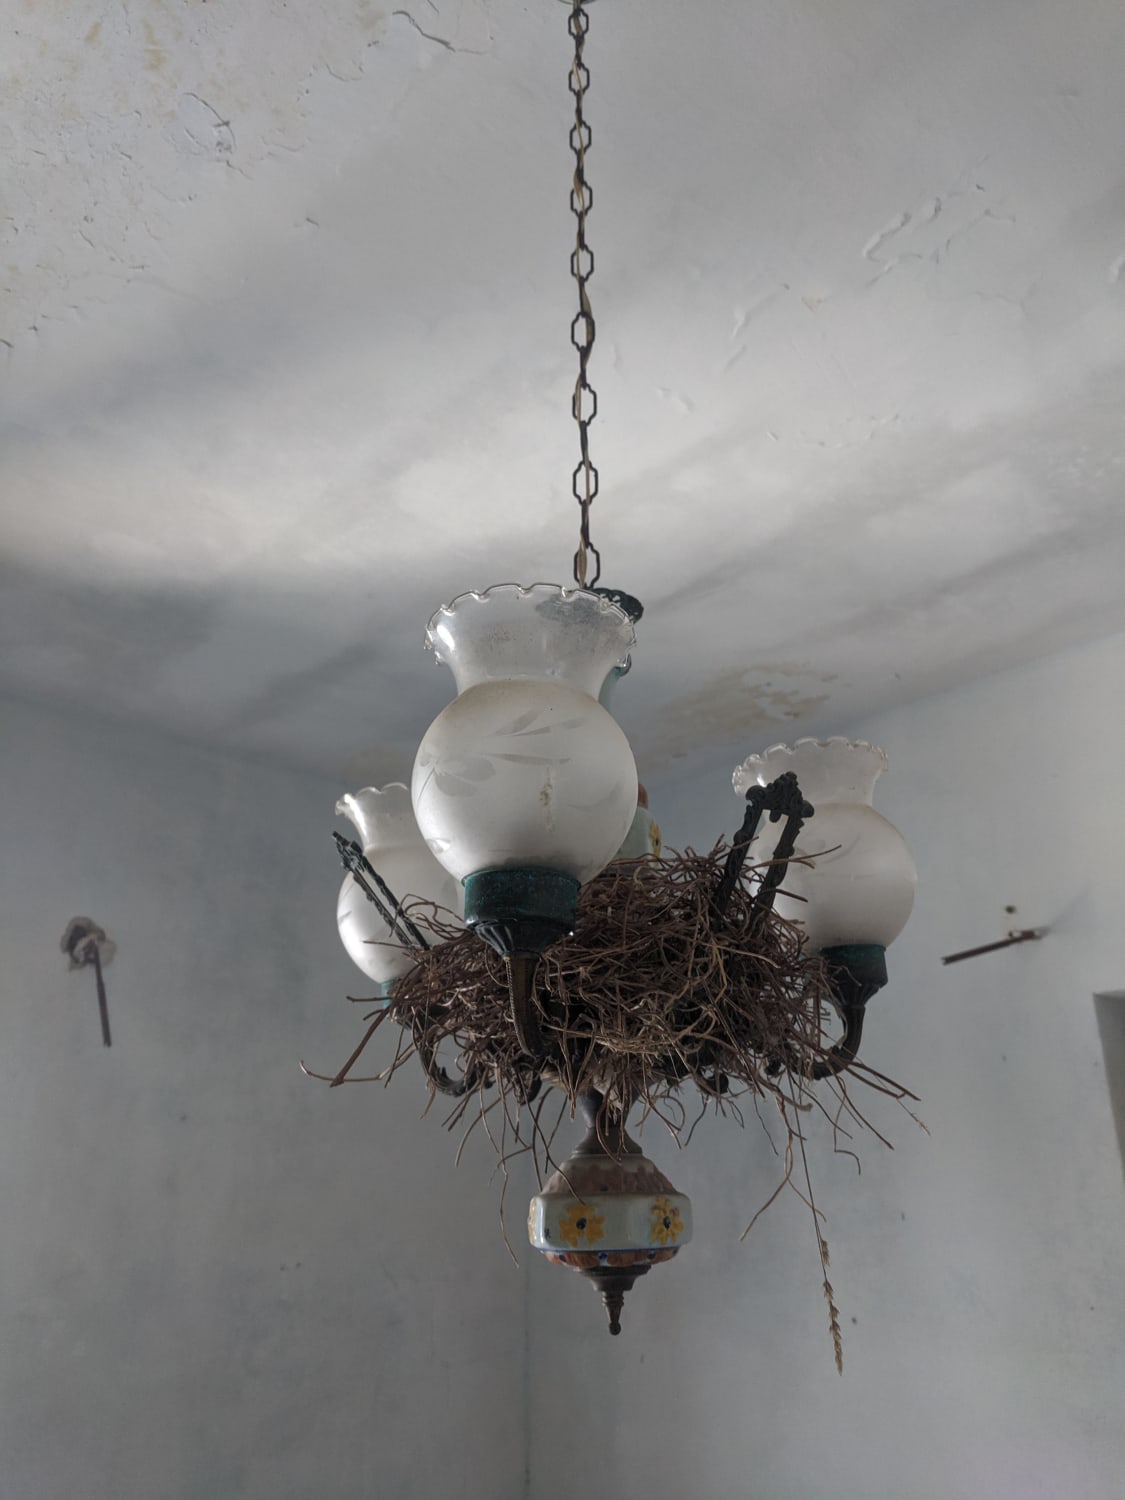 Bird's nest chandelier I found on Capri Island, Italy